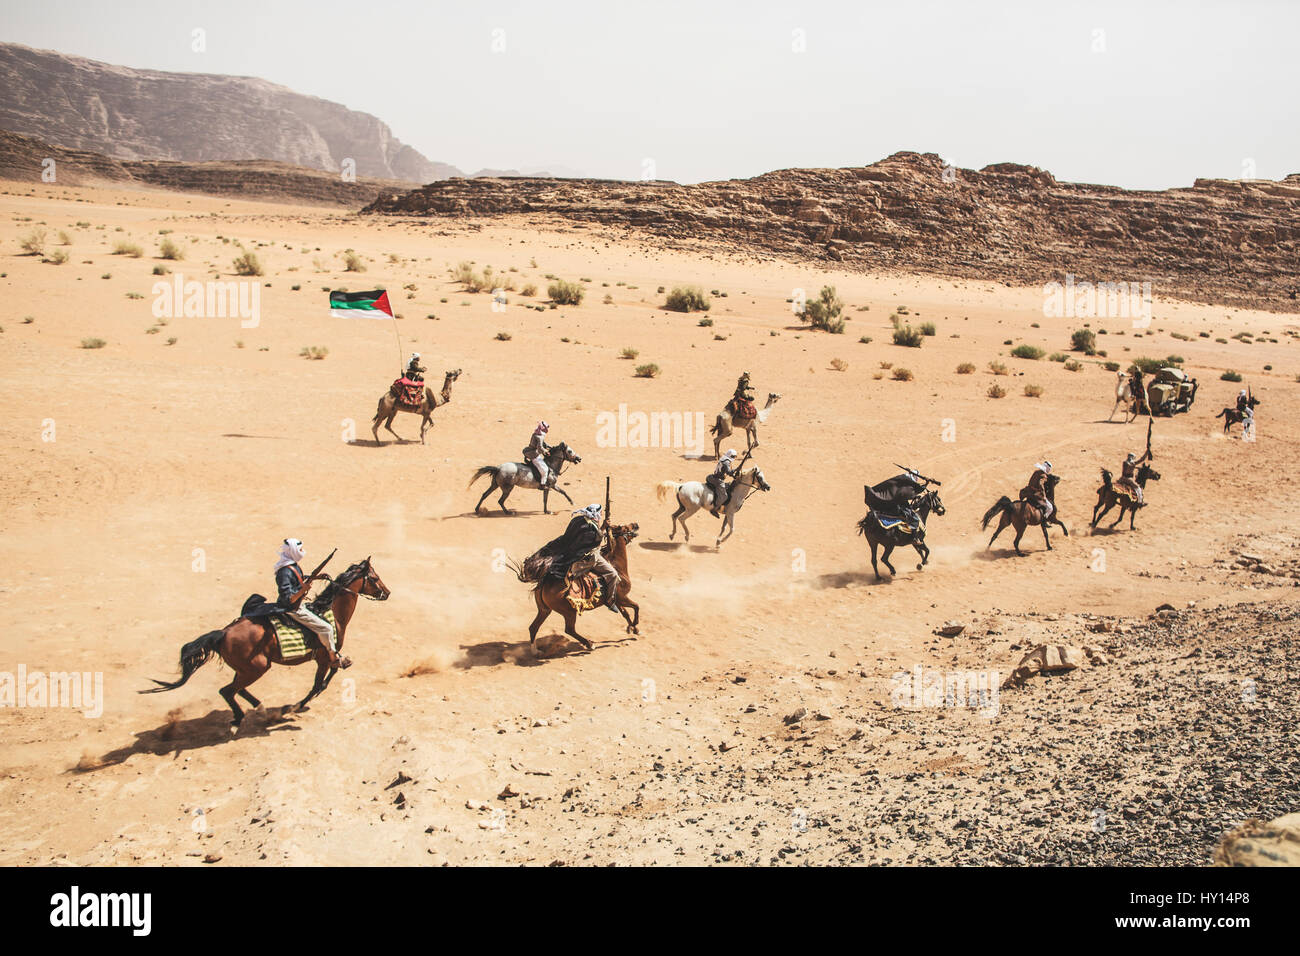 Krieger auf Pferden aus der "Wadi Rum" Show von Jordanien Erbe Revival Company (JHRC). Ziel ist es, einzigartige kulturelle Erfahrung für Touristen zu bauen Stockfoto